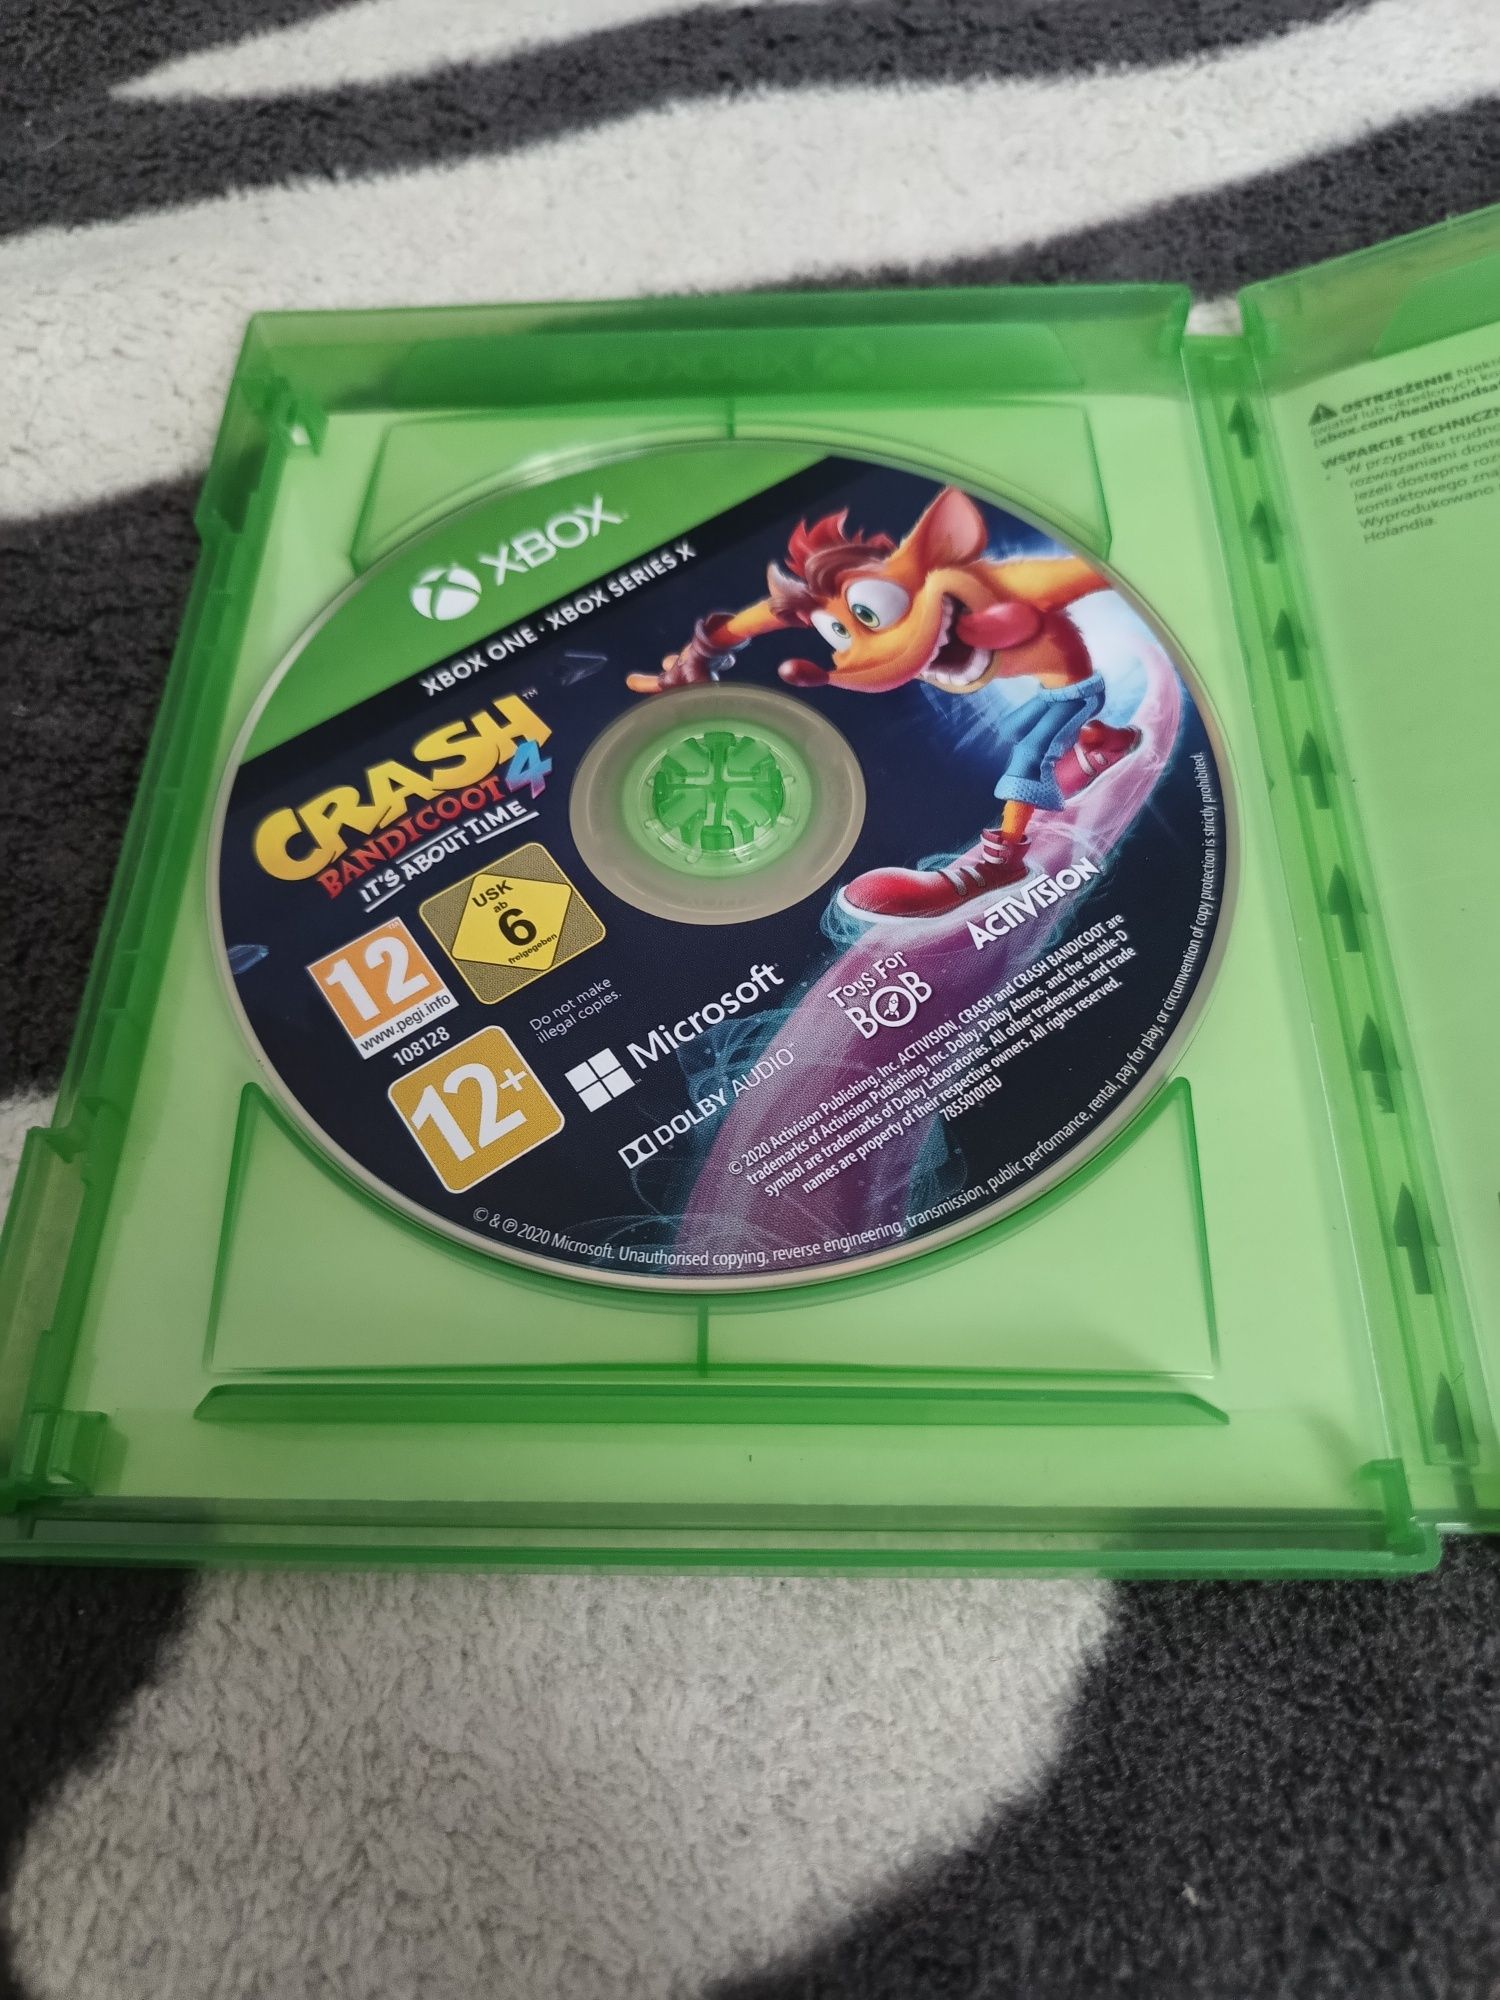 Gra Crash Bandicoot 4 Najwyższy Czas Xbox One /Series X